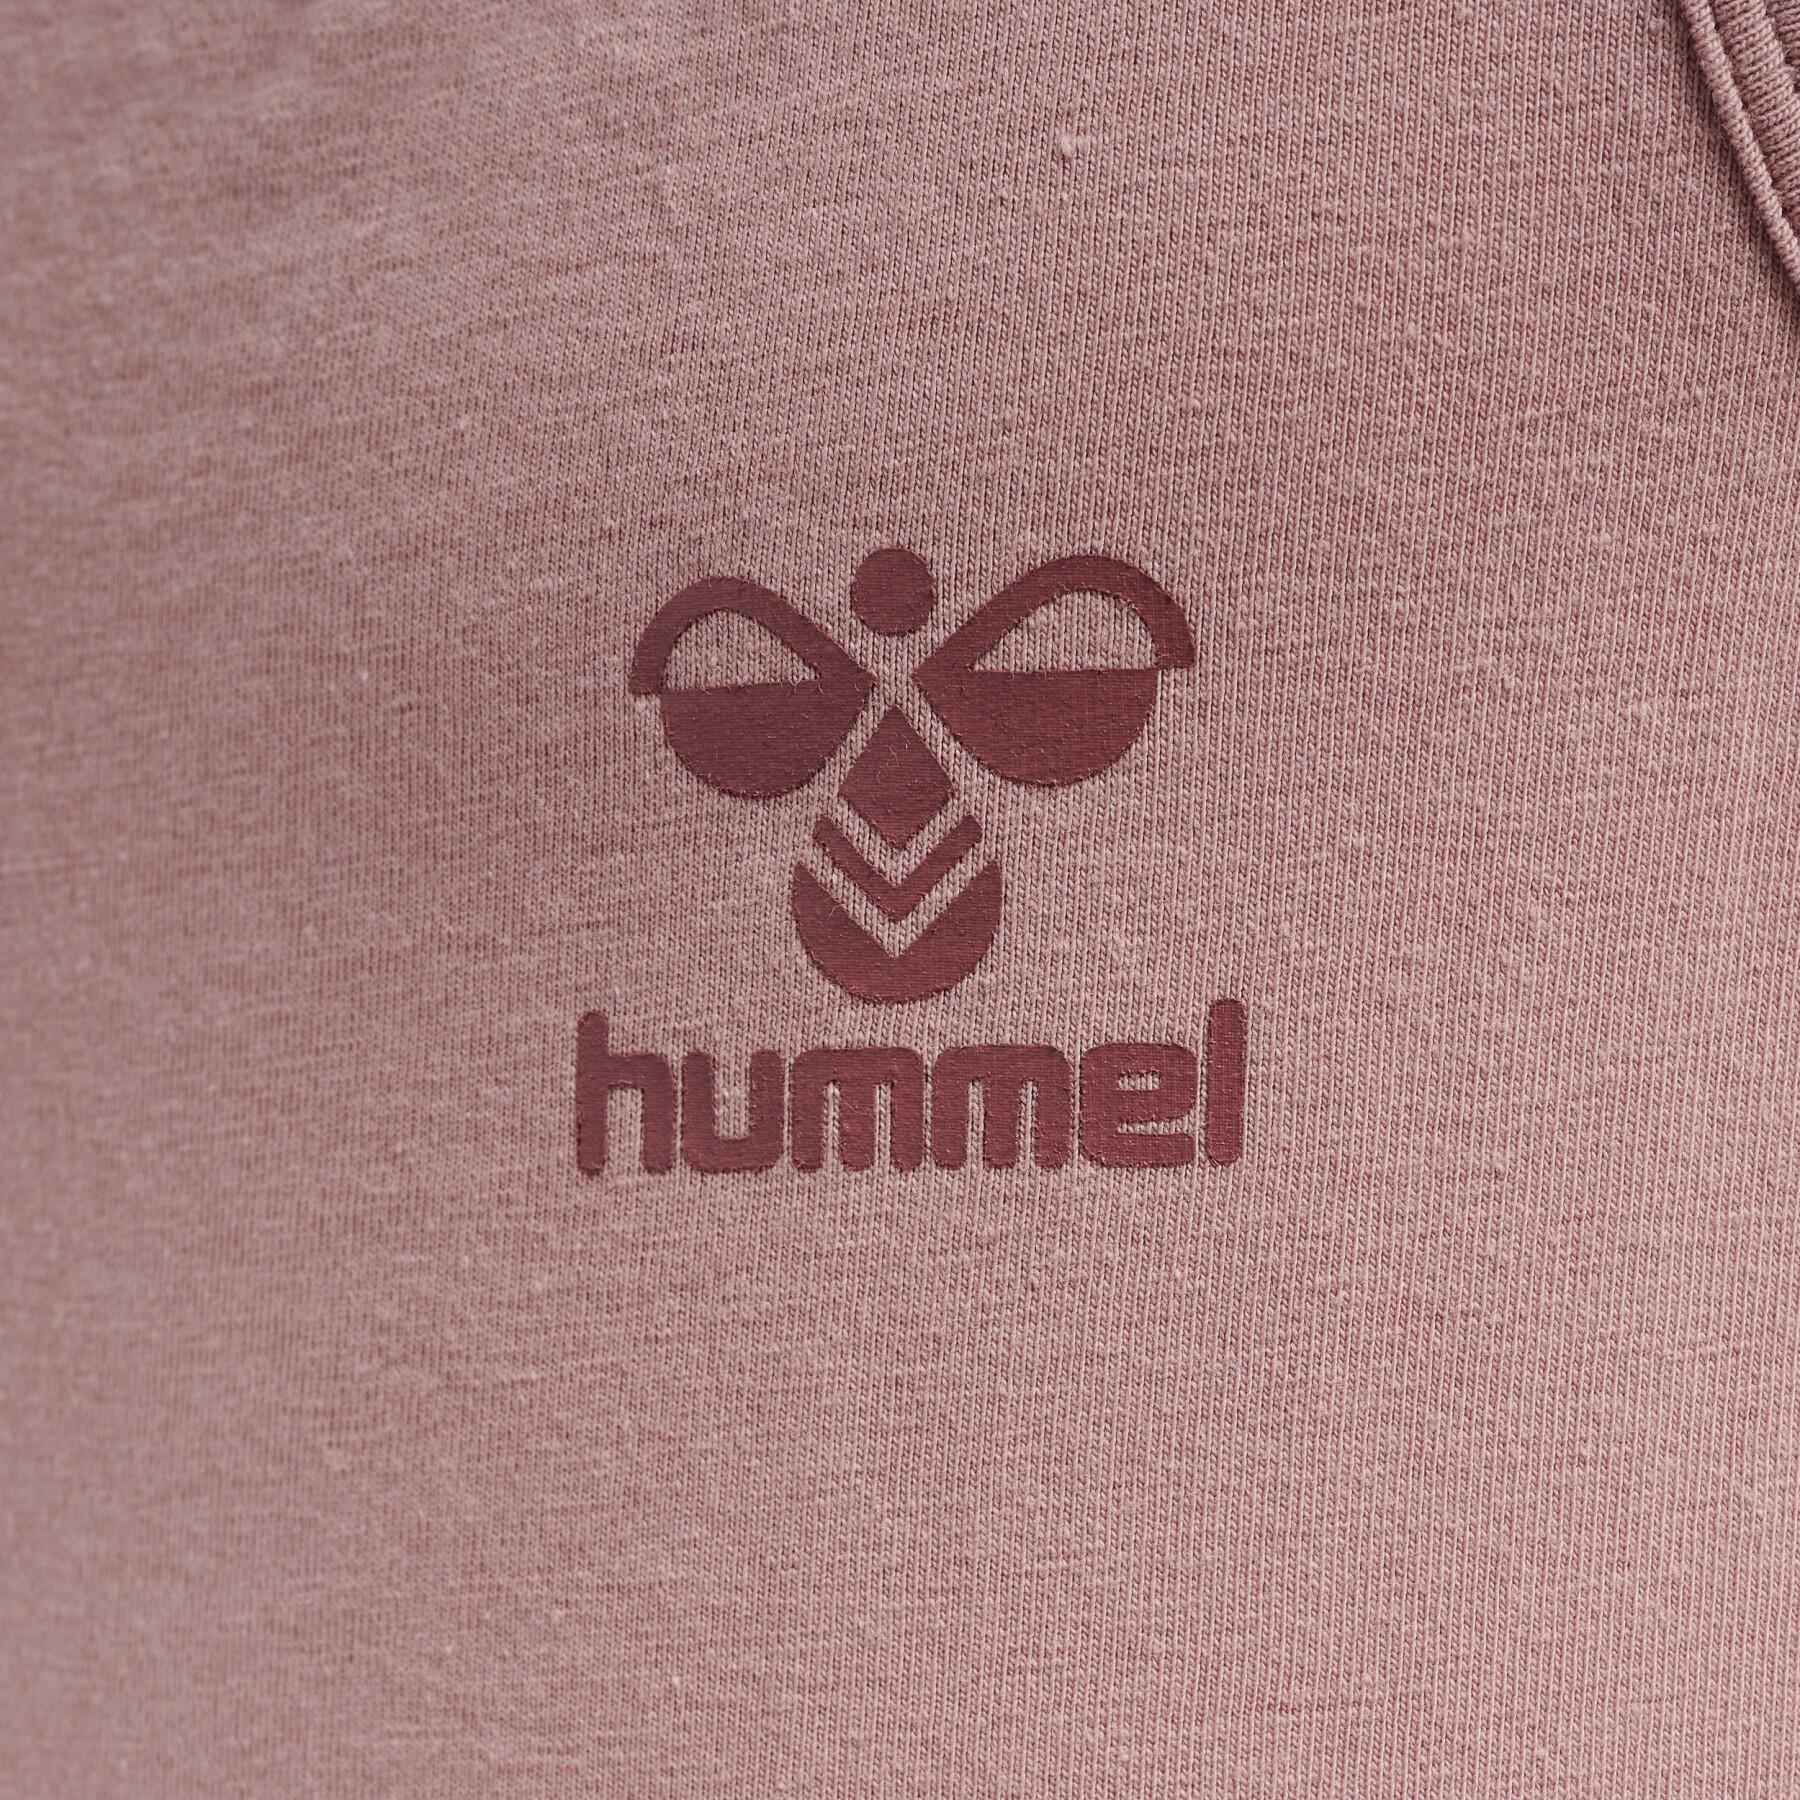 Camiseta de tirantes infantil Hummel hmlCAROLINA